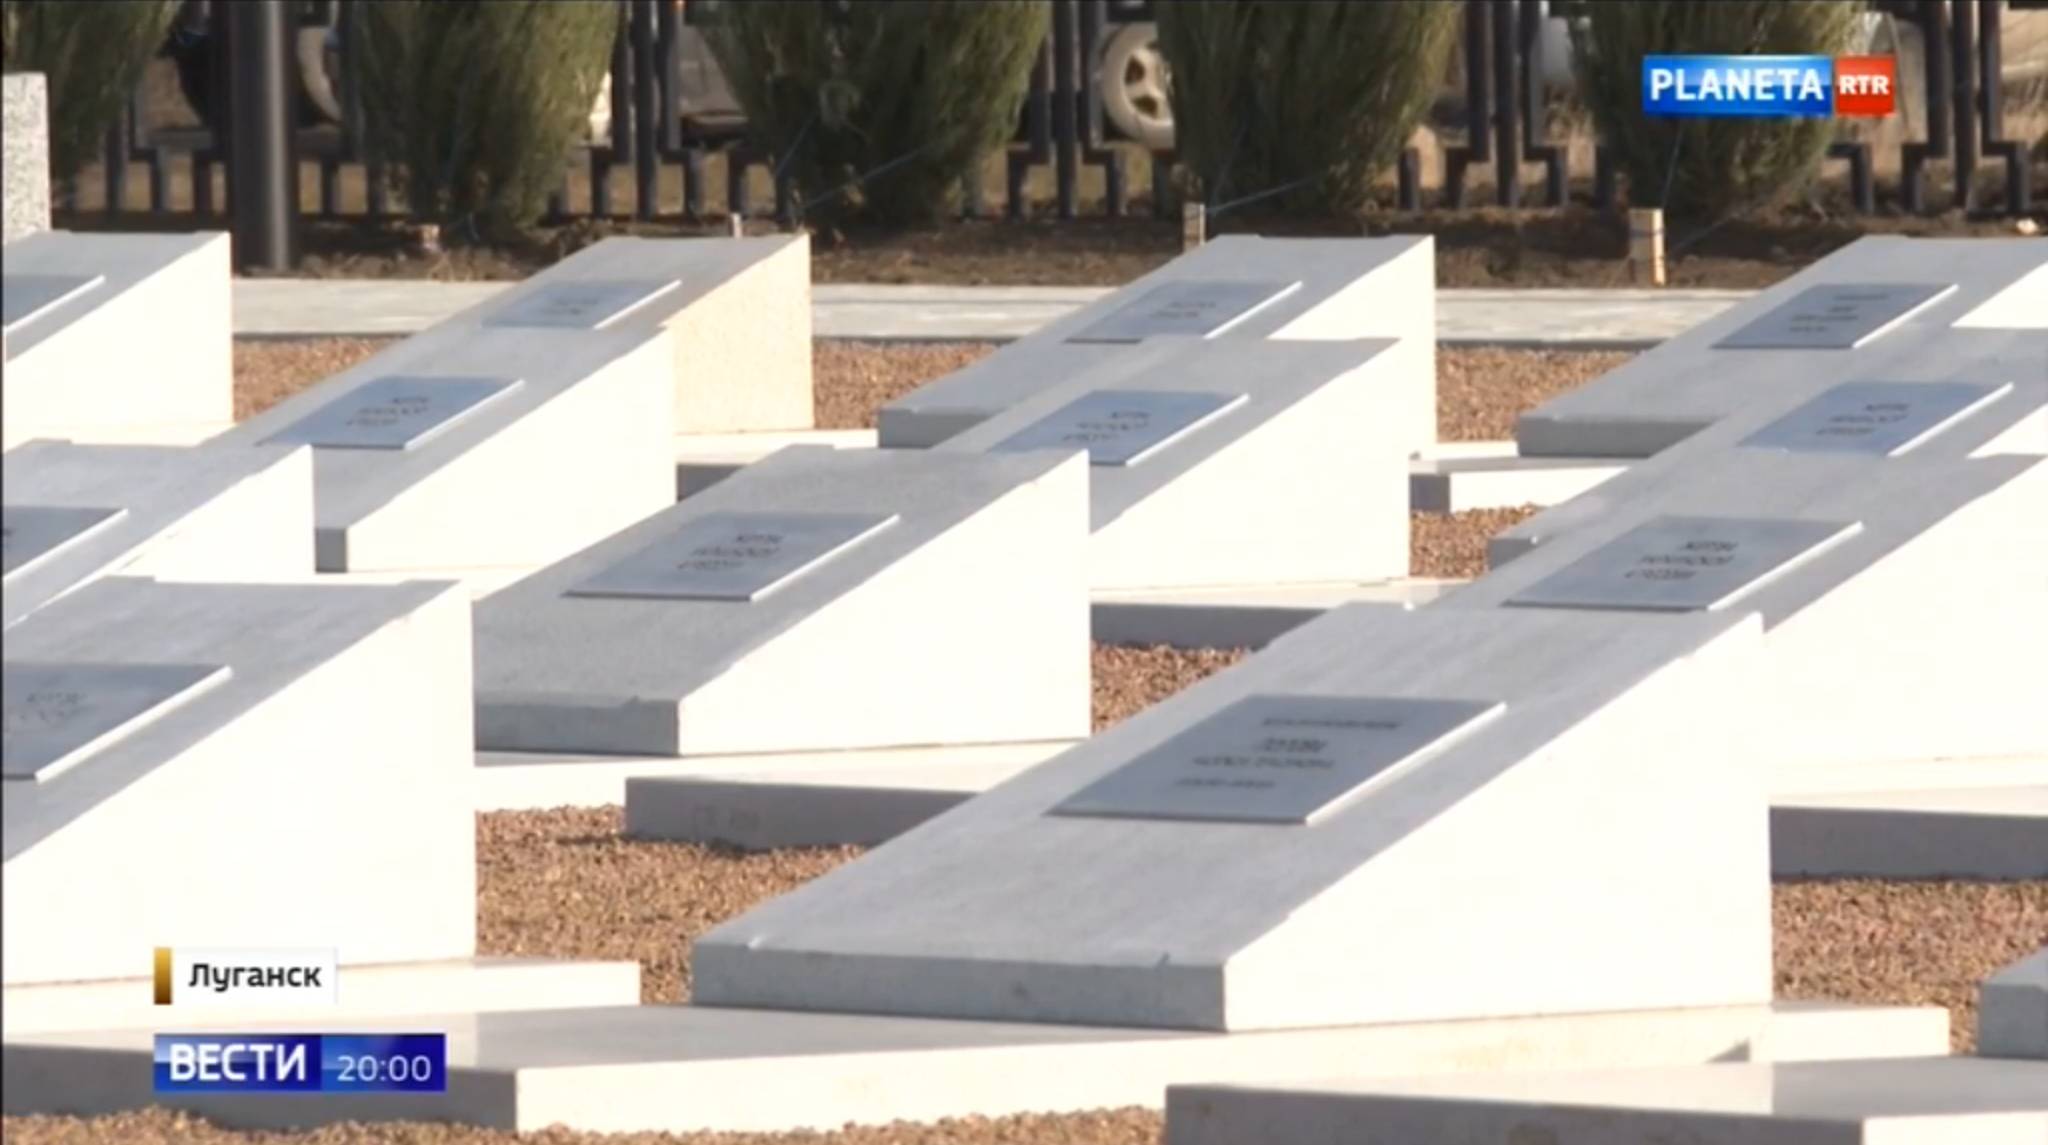 Cmentarz z identycznymi białymi nagrobkami bez krzyży